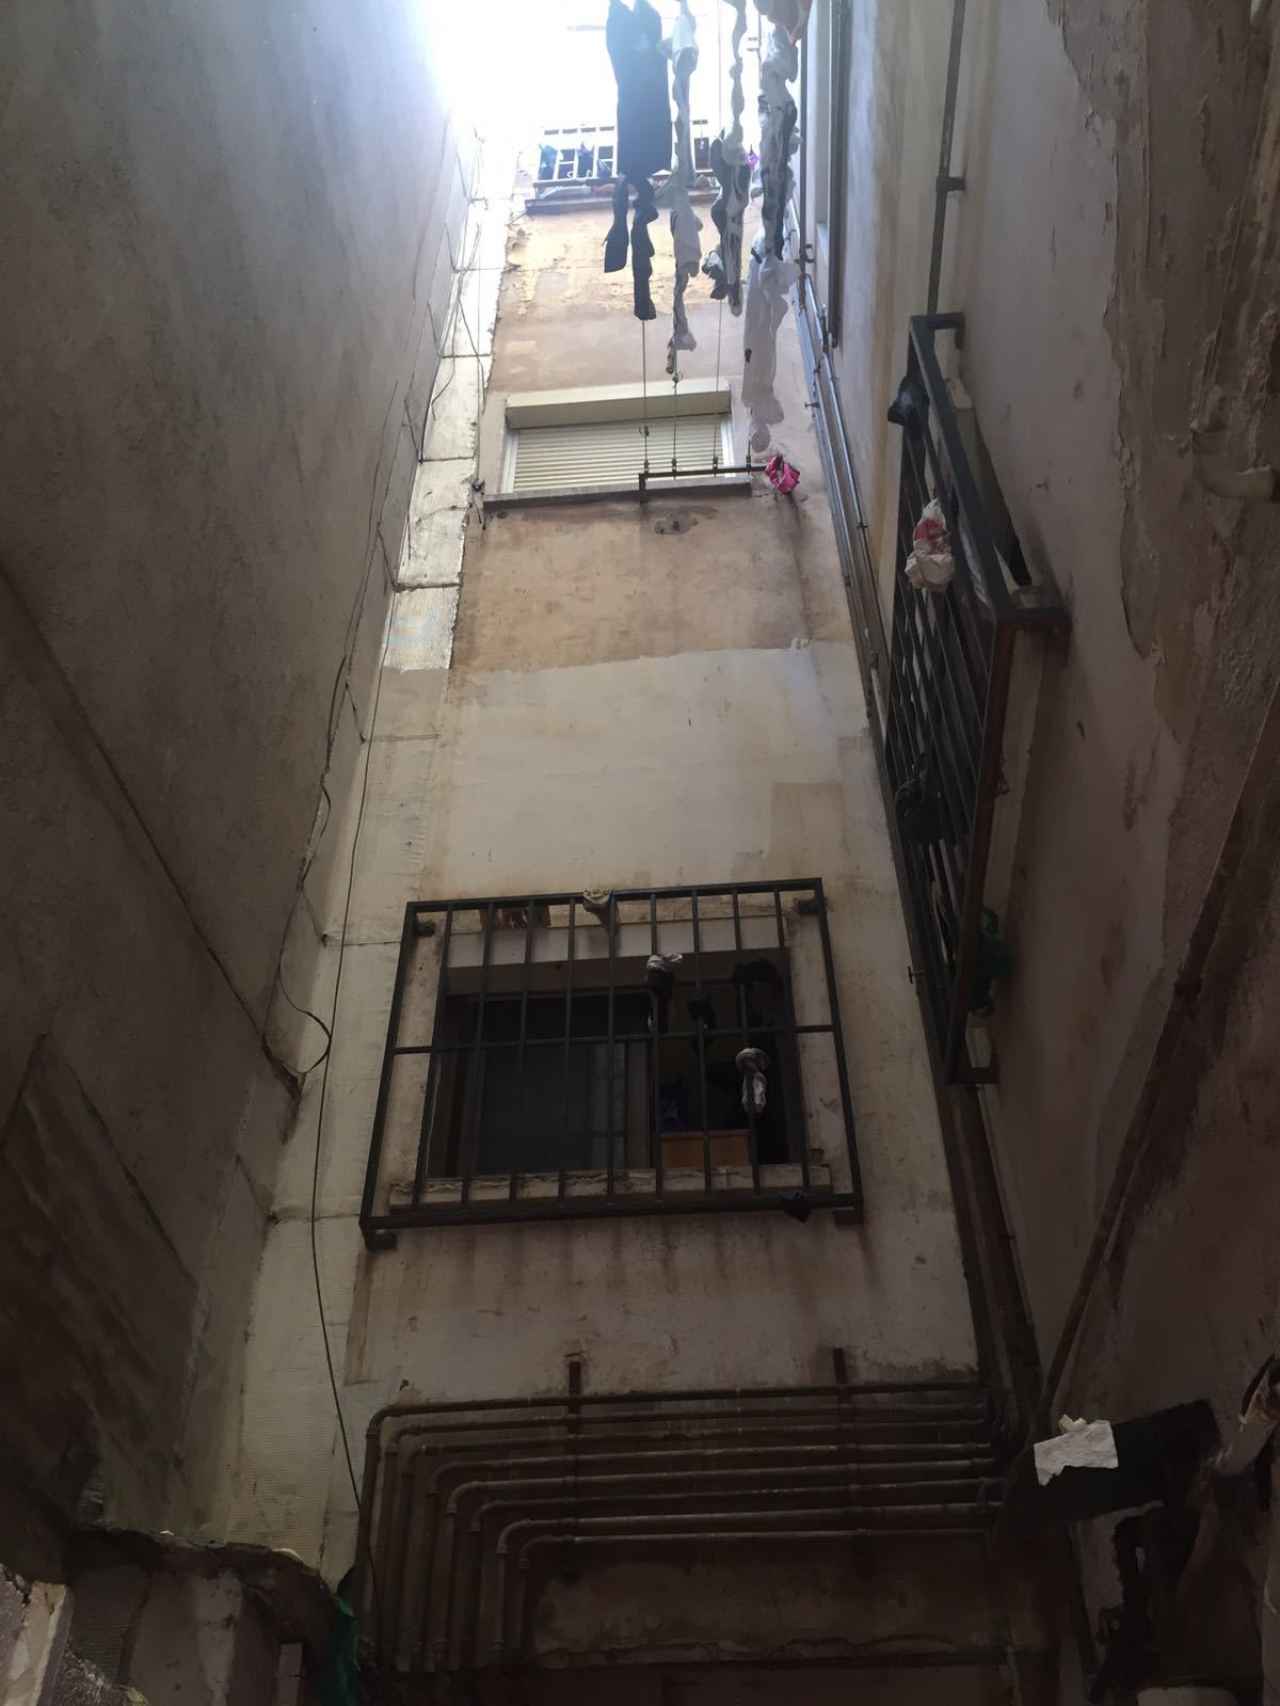 La mujer muerta y su esposo, homicida confeso, vivían en un piso patera en la segunda planta